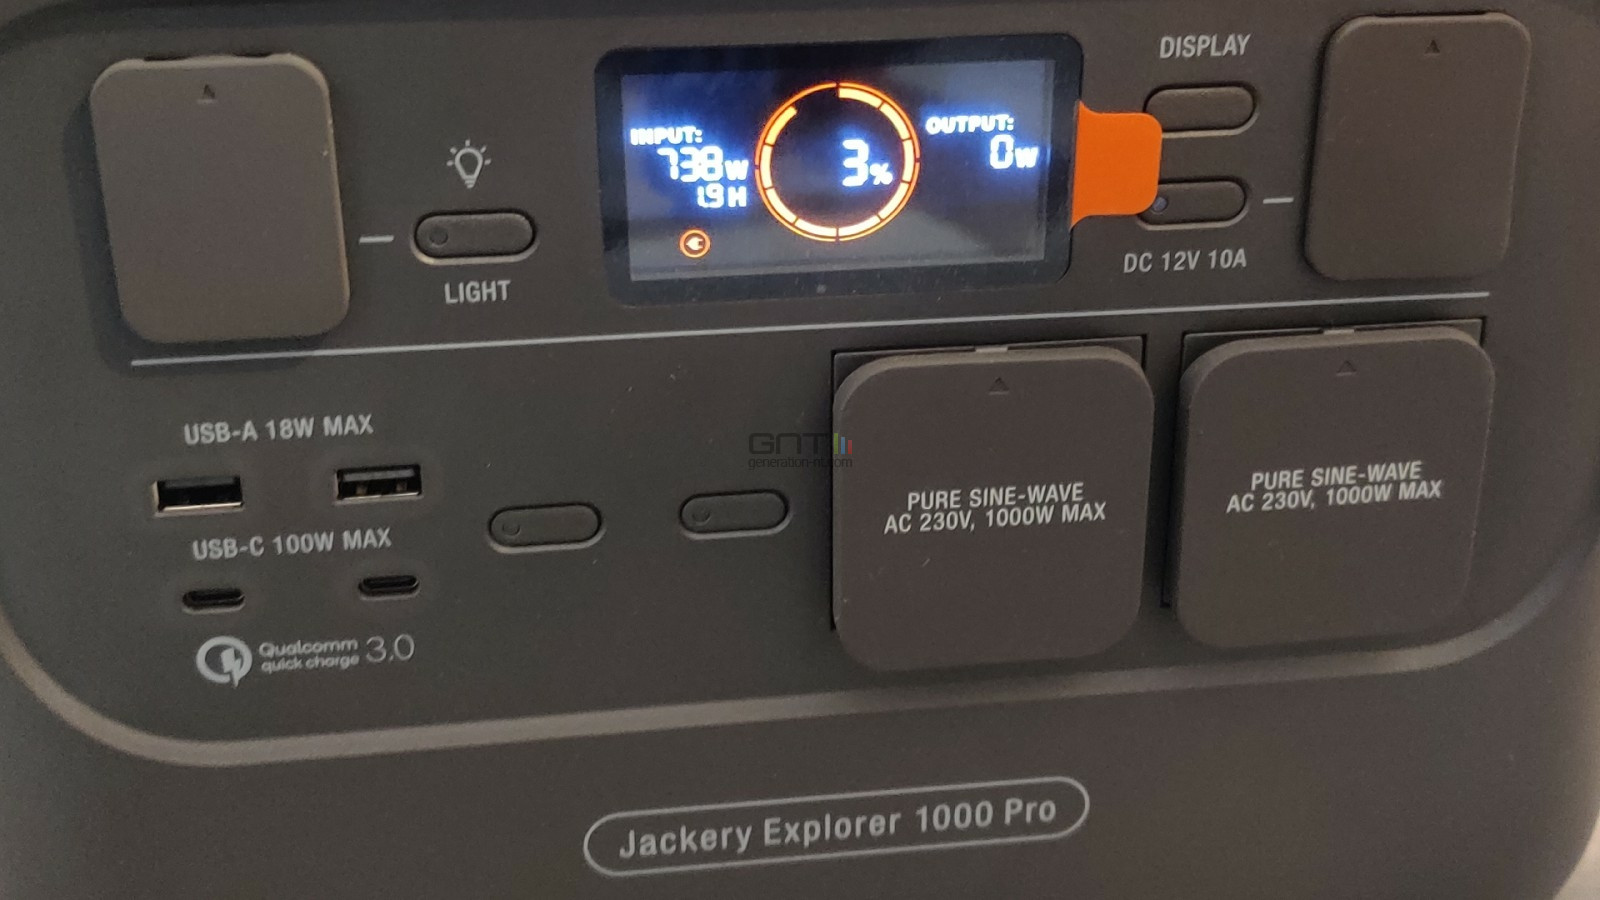 Jackery Explorer 1000 Pro - 06